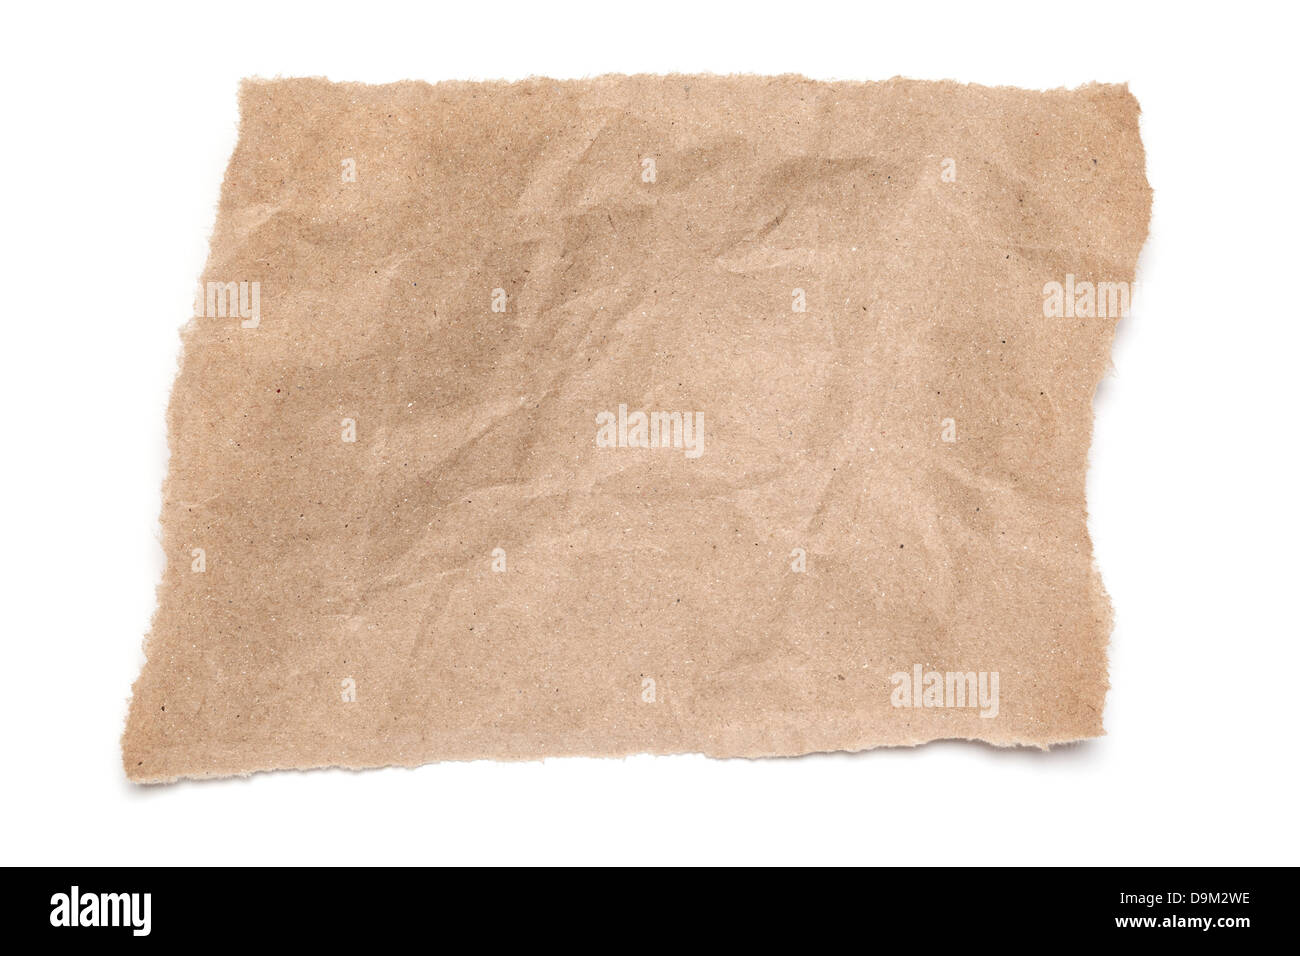 Lacerato e indebolita di carta marrone - un pezzo sottoposto a rip di accartocciata carta marrone, su sfondo bianco con soft shadow. Foto Stock